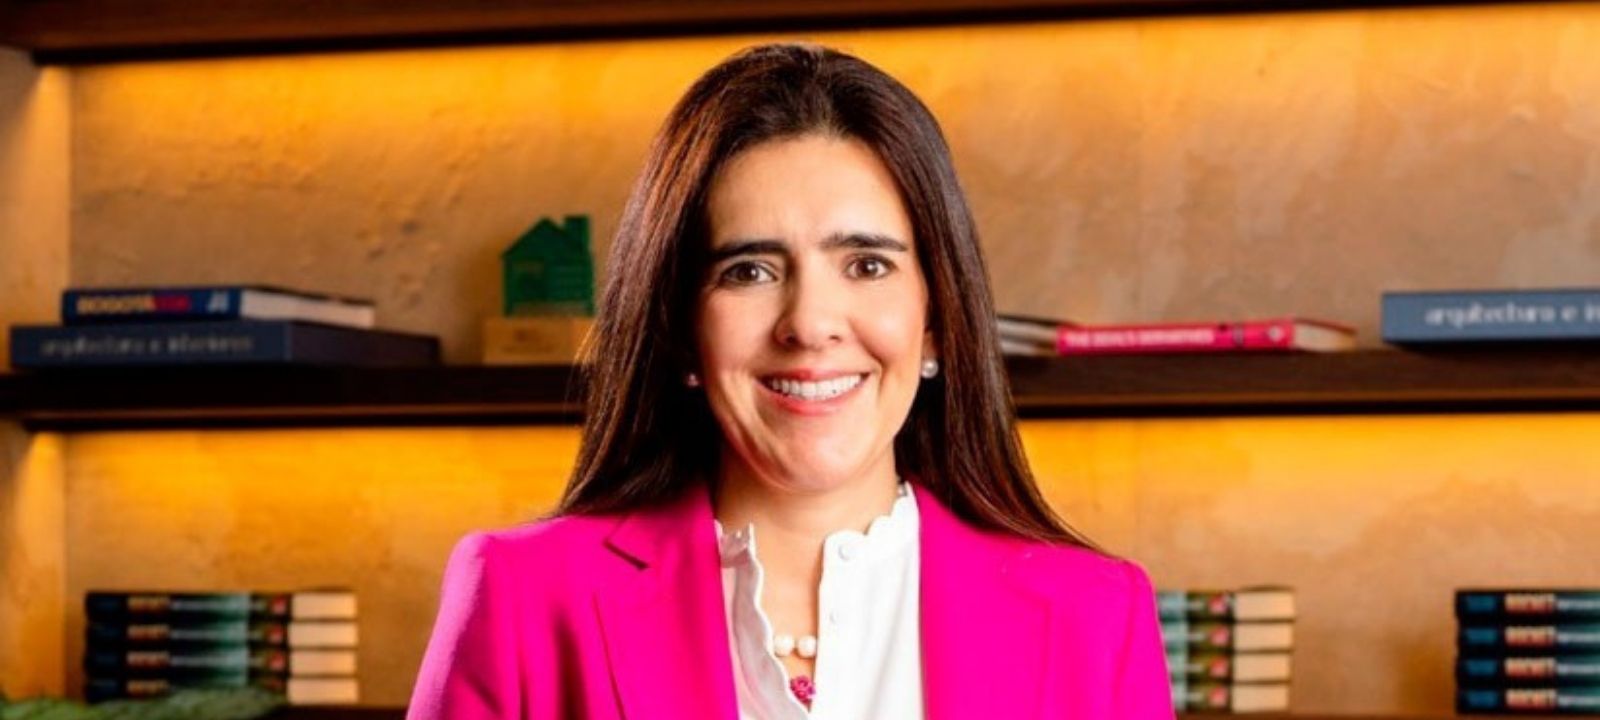 Juliana Sguerra, nueva Managing Director & Partner de la firma Boston Consulting Group